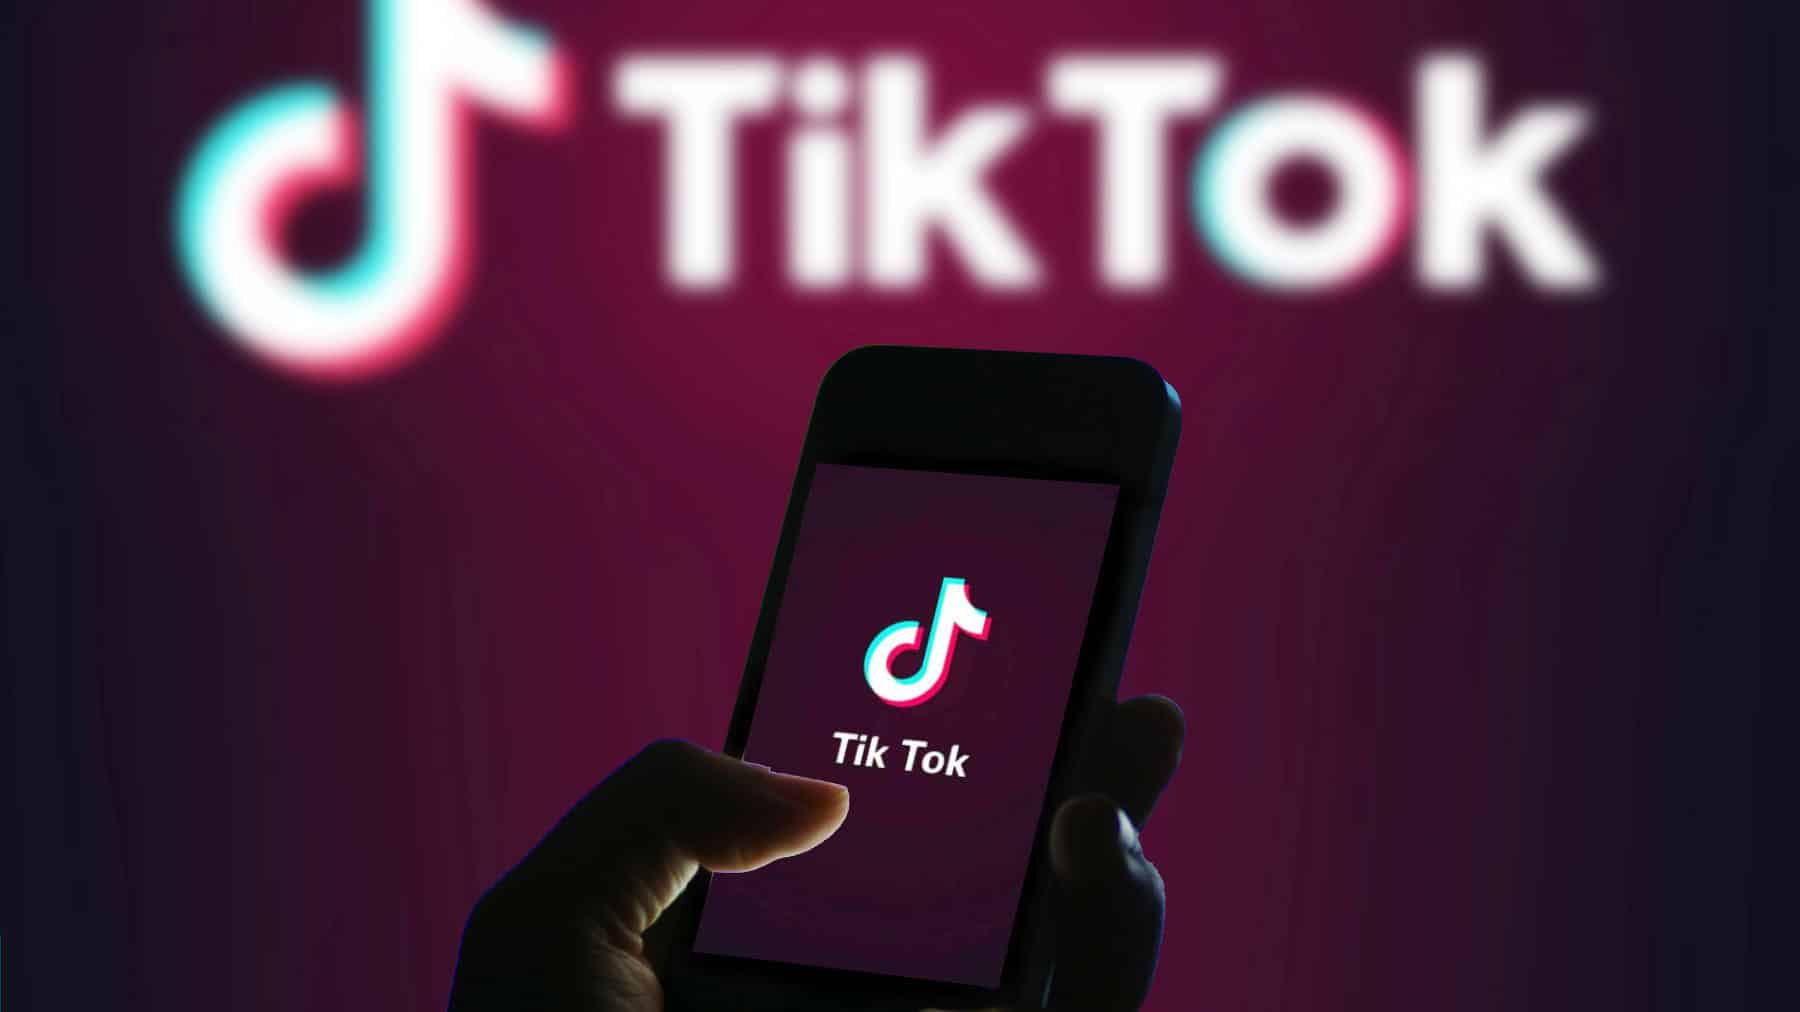 Photographie du logo TikTok avec une personne qui tient son portable dans les mains. La méthode de travail 996 est controversée.